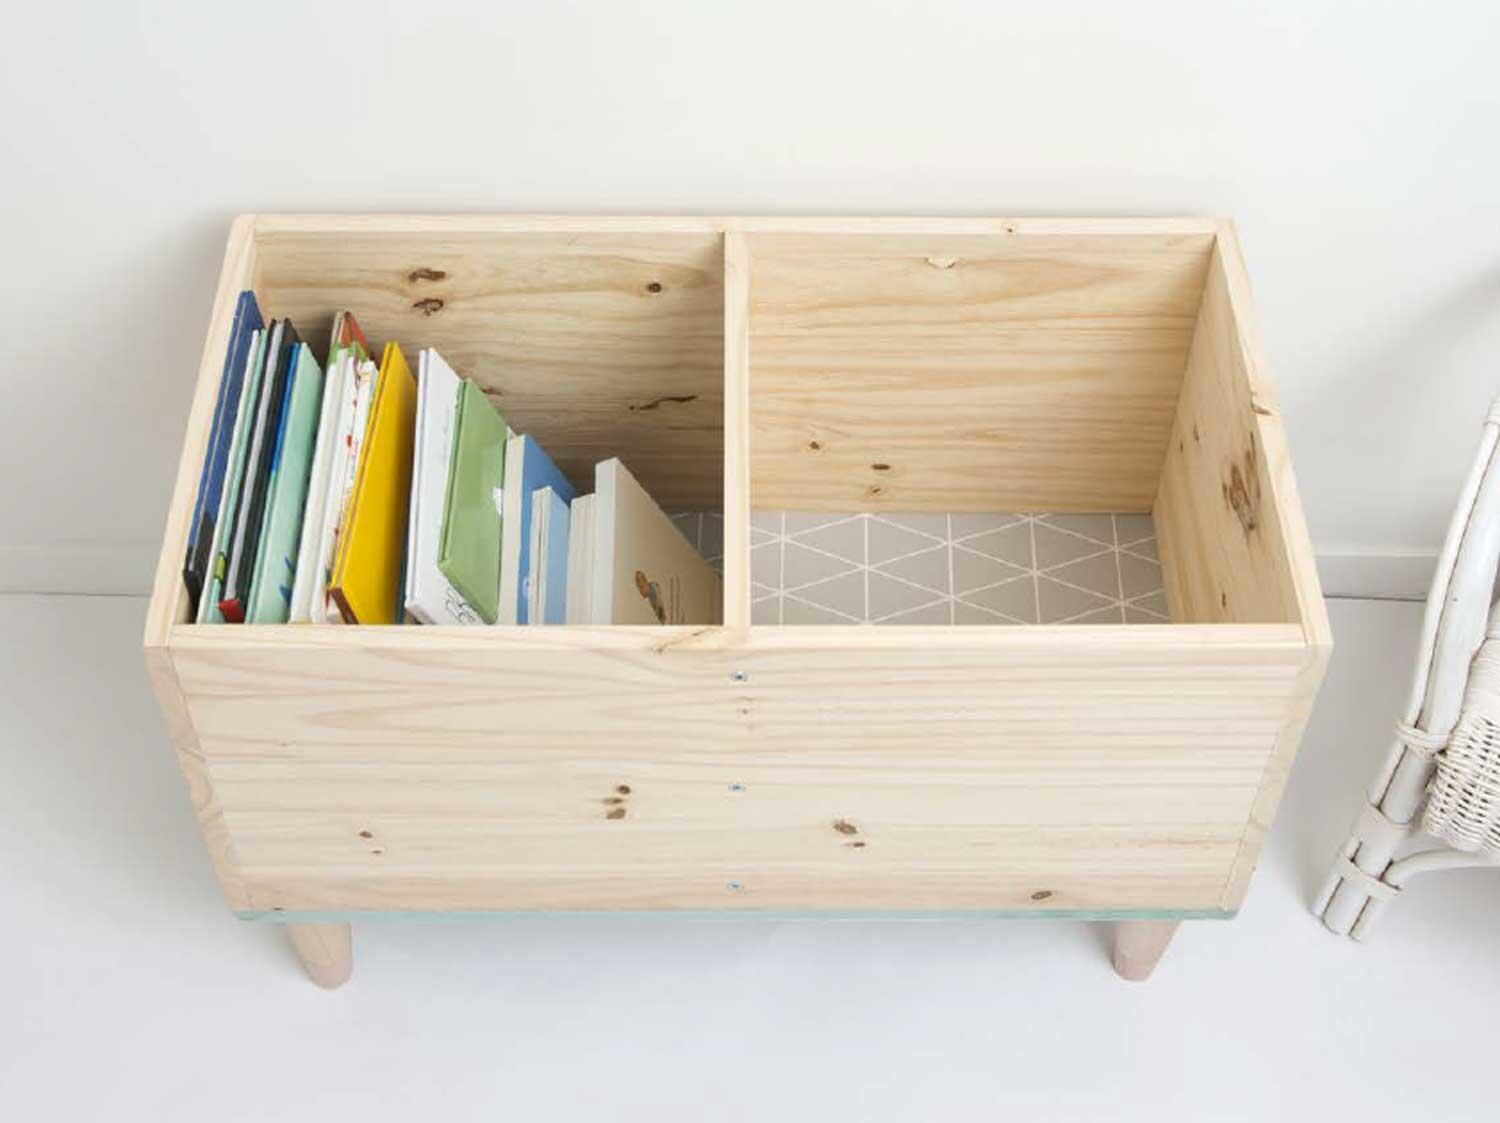 DIY : créer un coffre pour ranger ses livres d'enfant